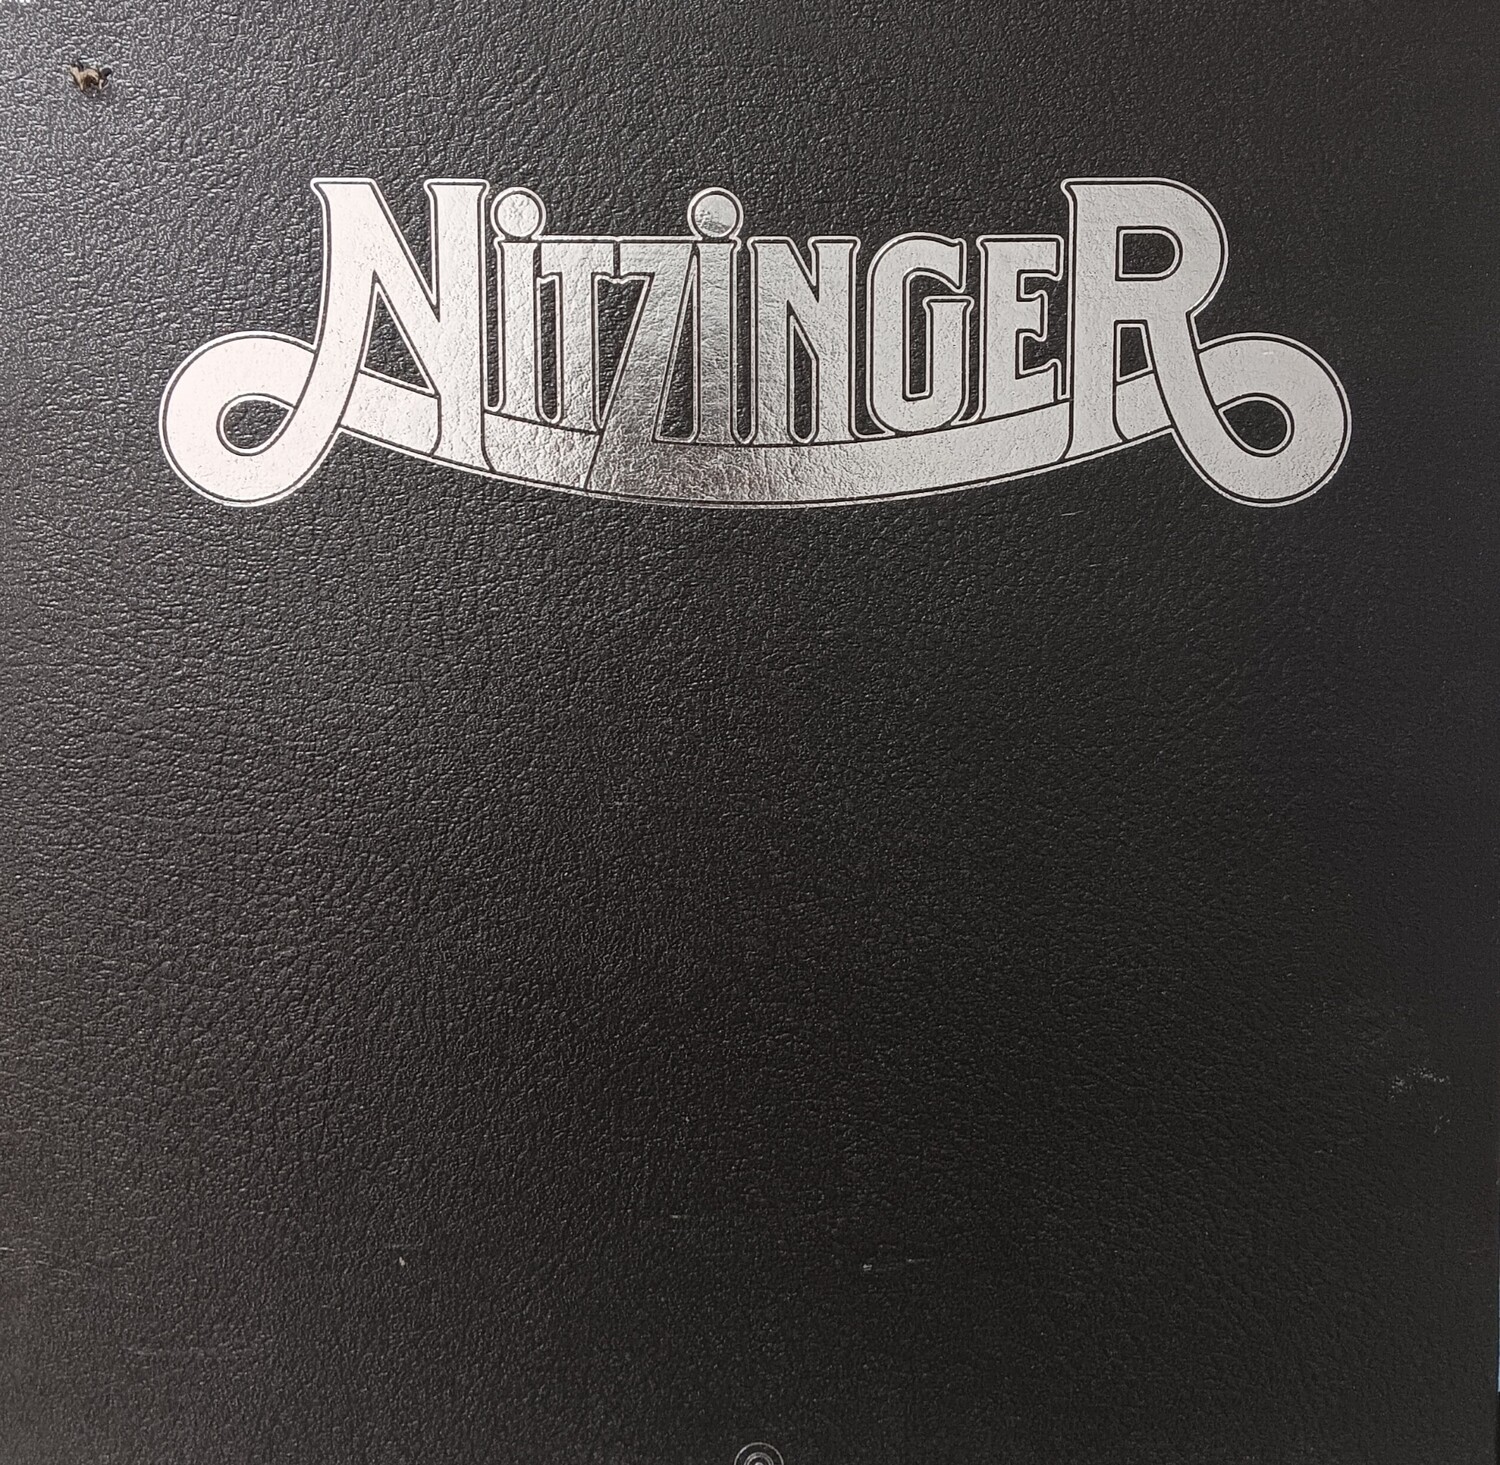 NITZINGER - Nitzinger